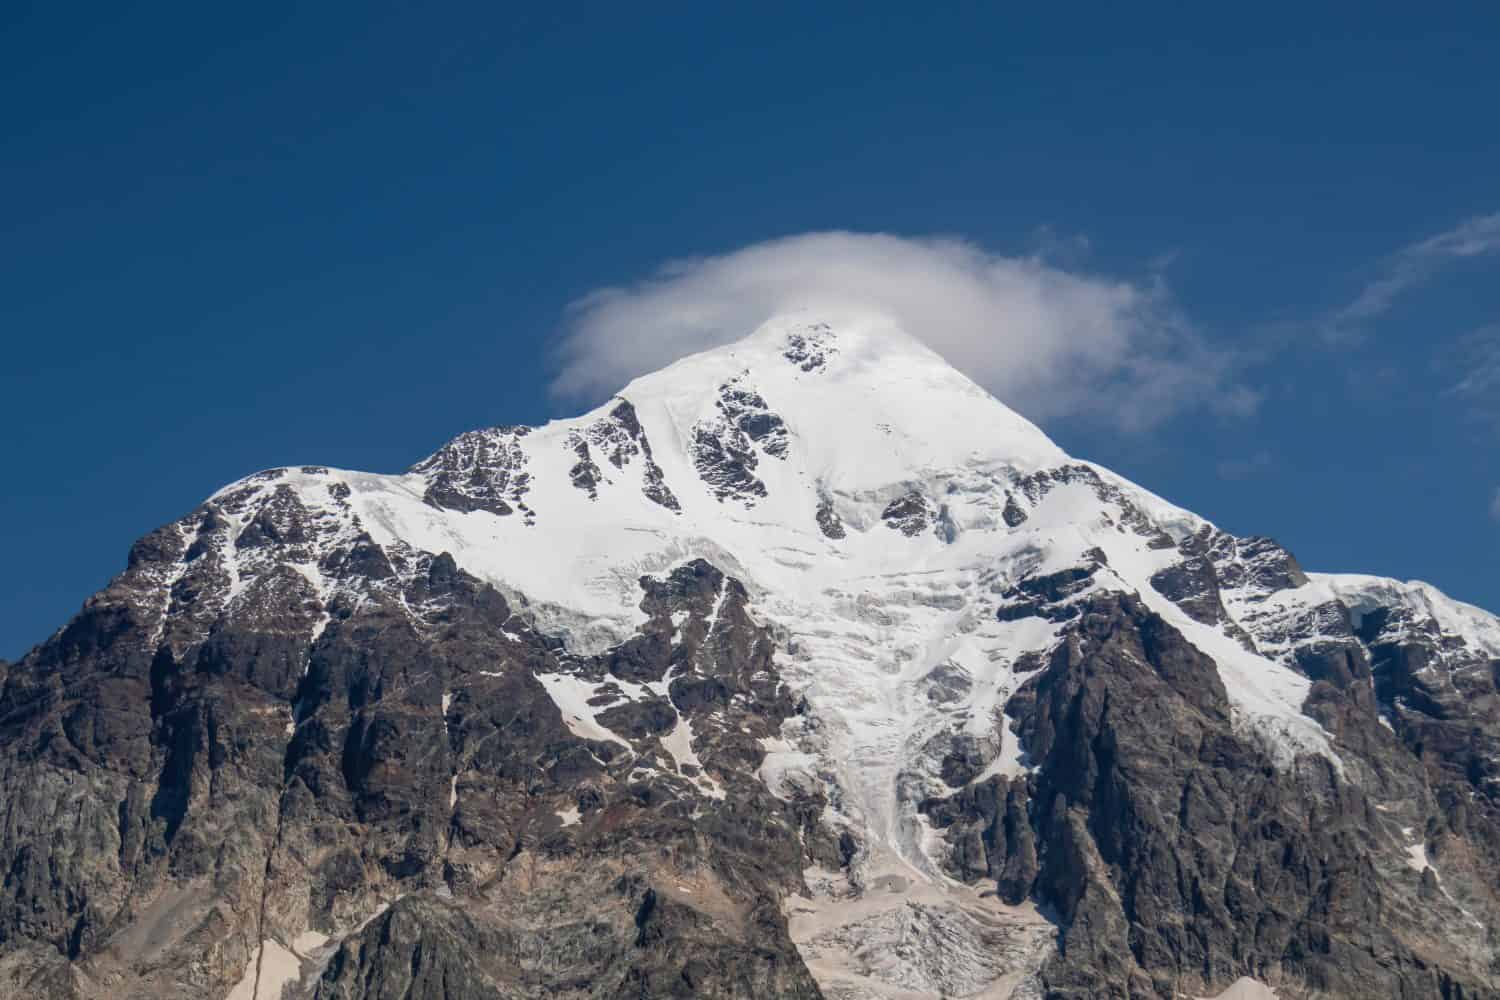 Una vista panoramica sulla vetta innevata di Tetnuldi nella catena montuosa del Grande Caucaso in Georgia, nella regione di Svaneti.  Un ghiacciaio sta scendendo lungo il pendio della montagna.  Picchi aguzzi, voglia di viaggiare, solitudine.